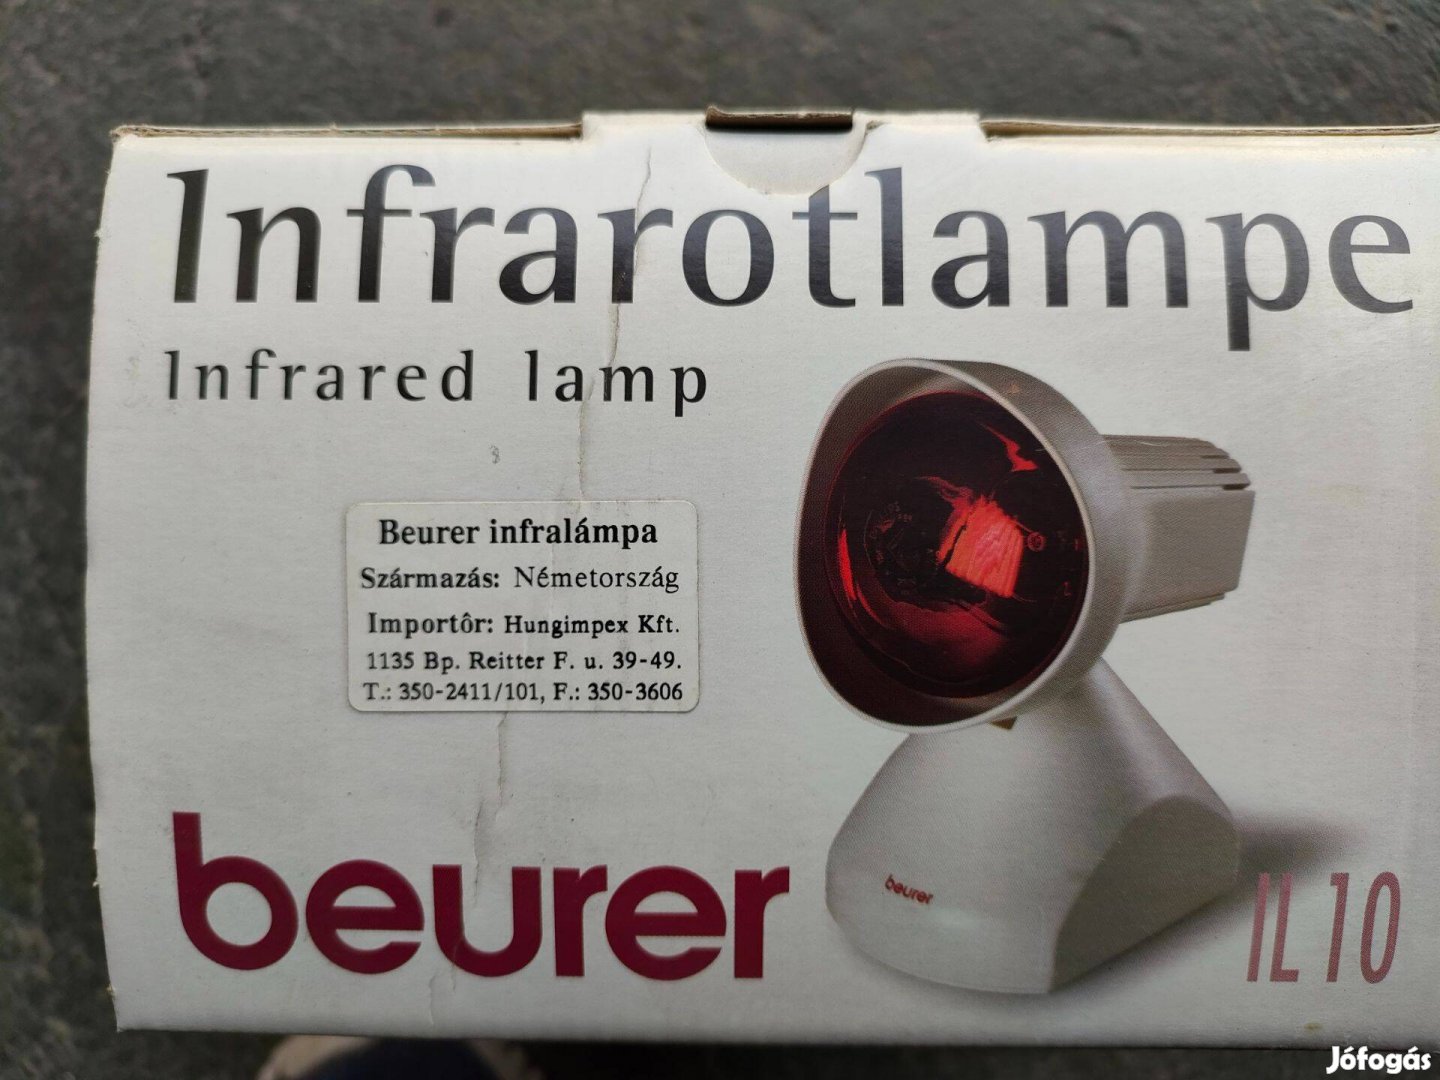 Beurer márkájú infravörös lámpa eladó